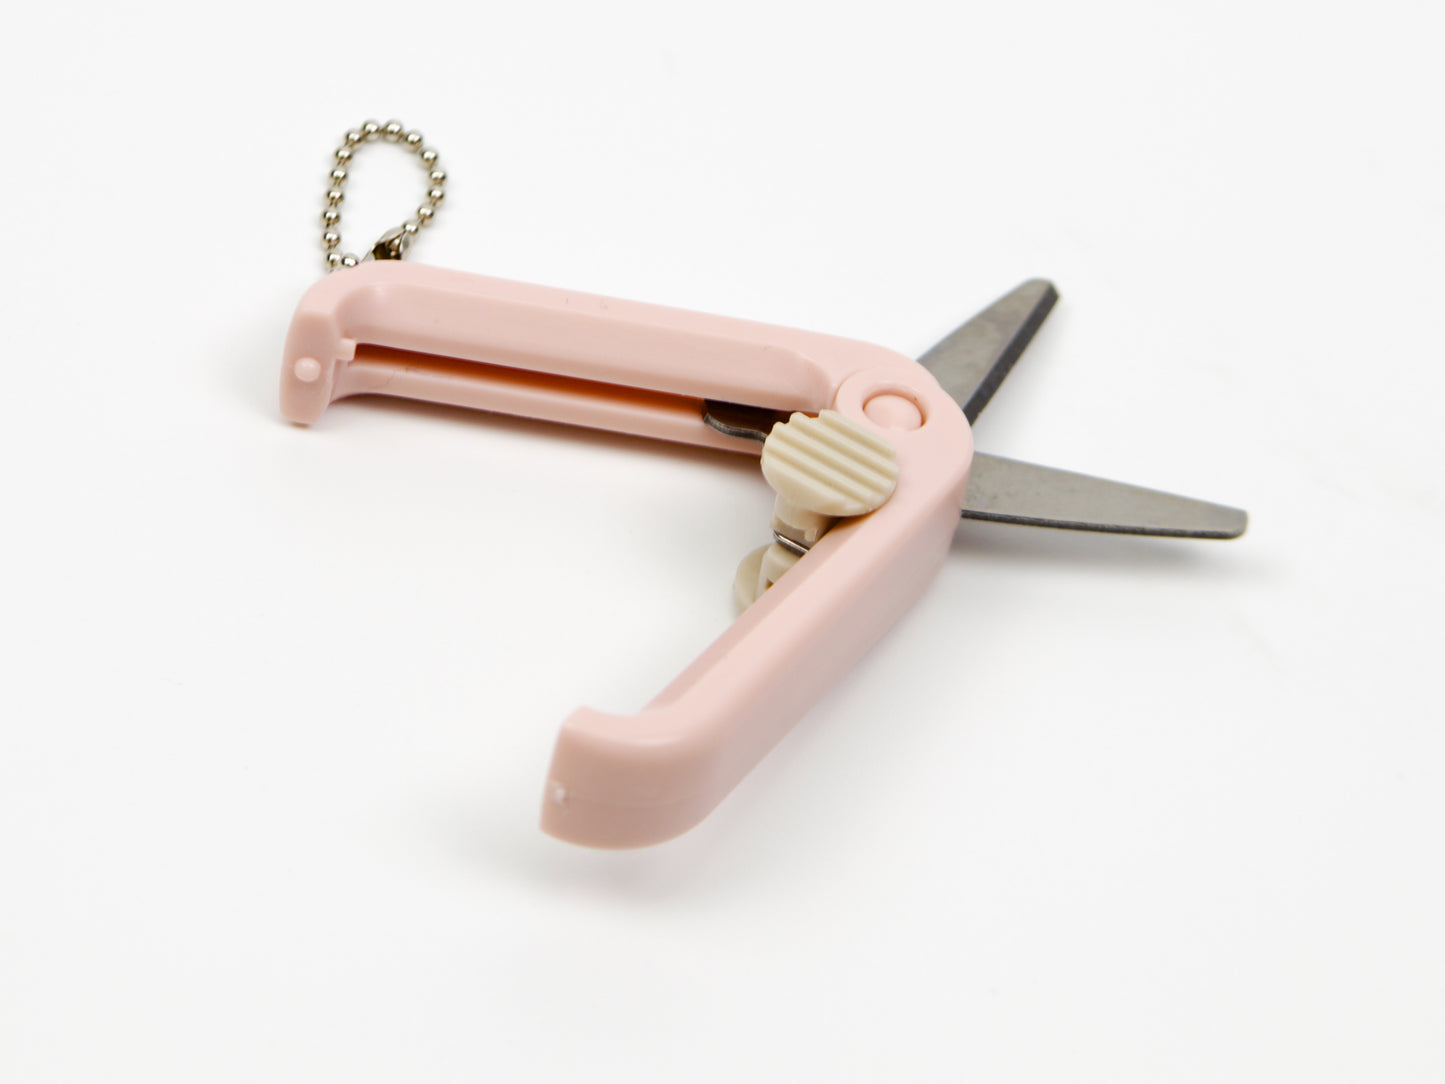 Kutsuwa Mini Scissors